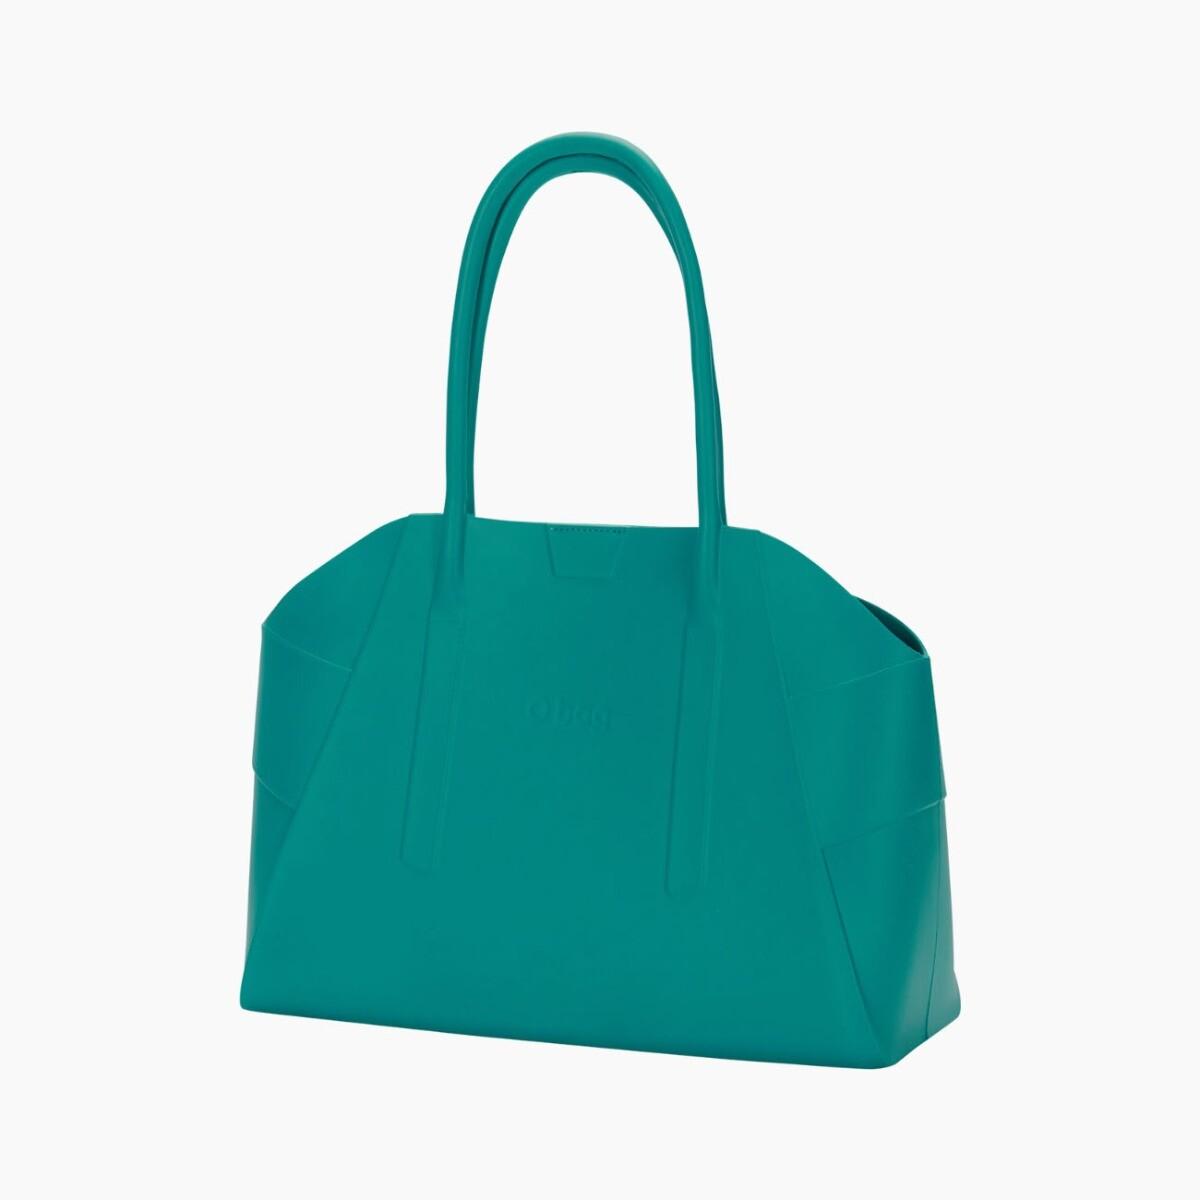 O bag unique blue grass